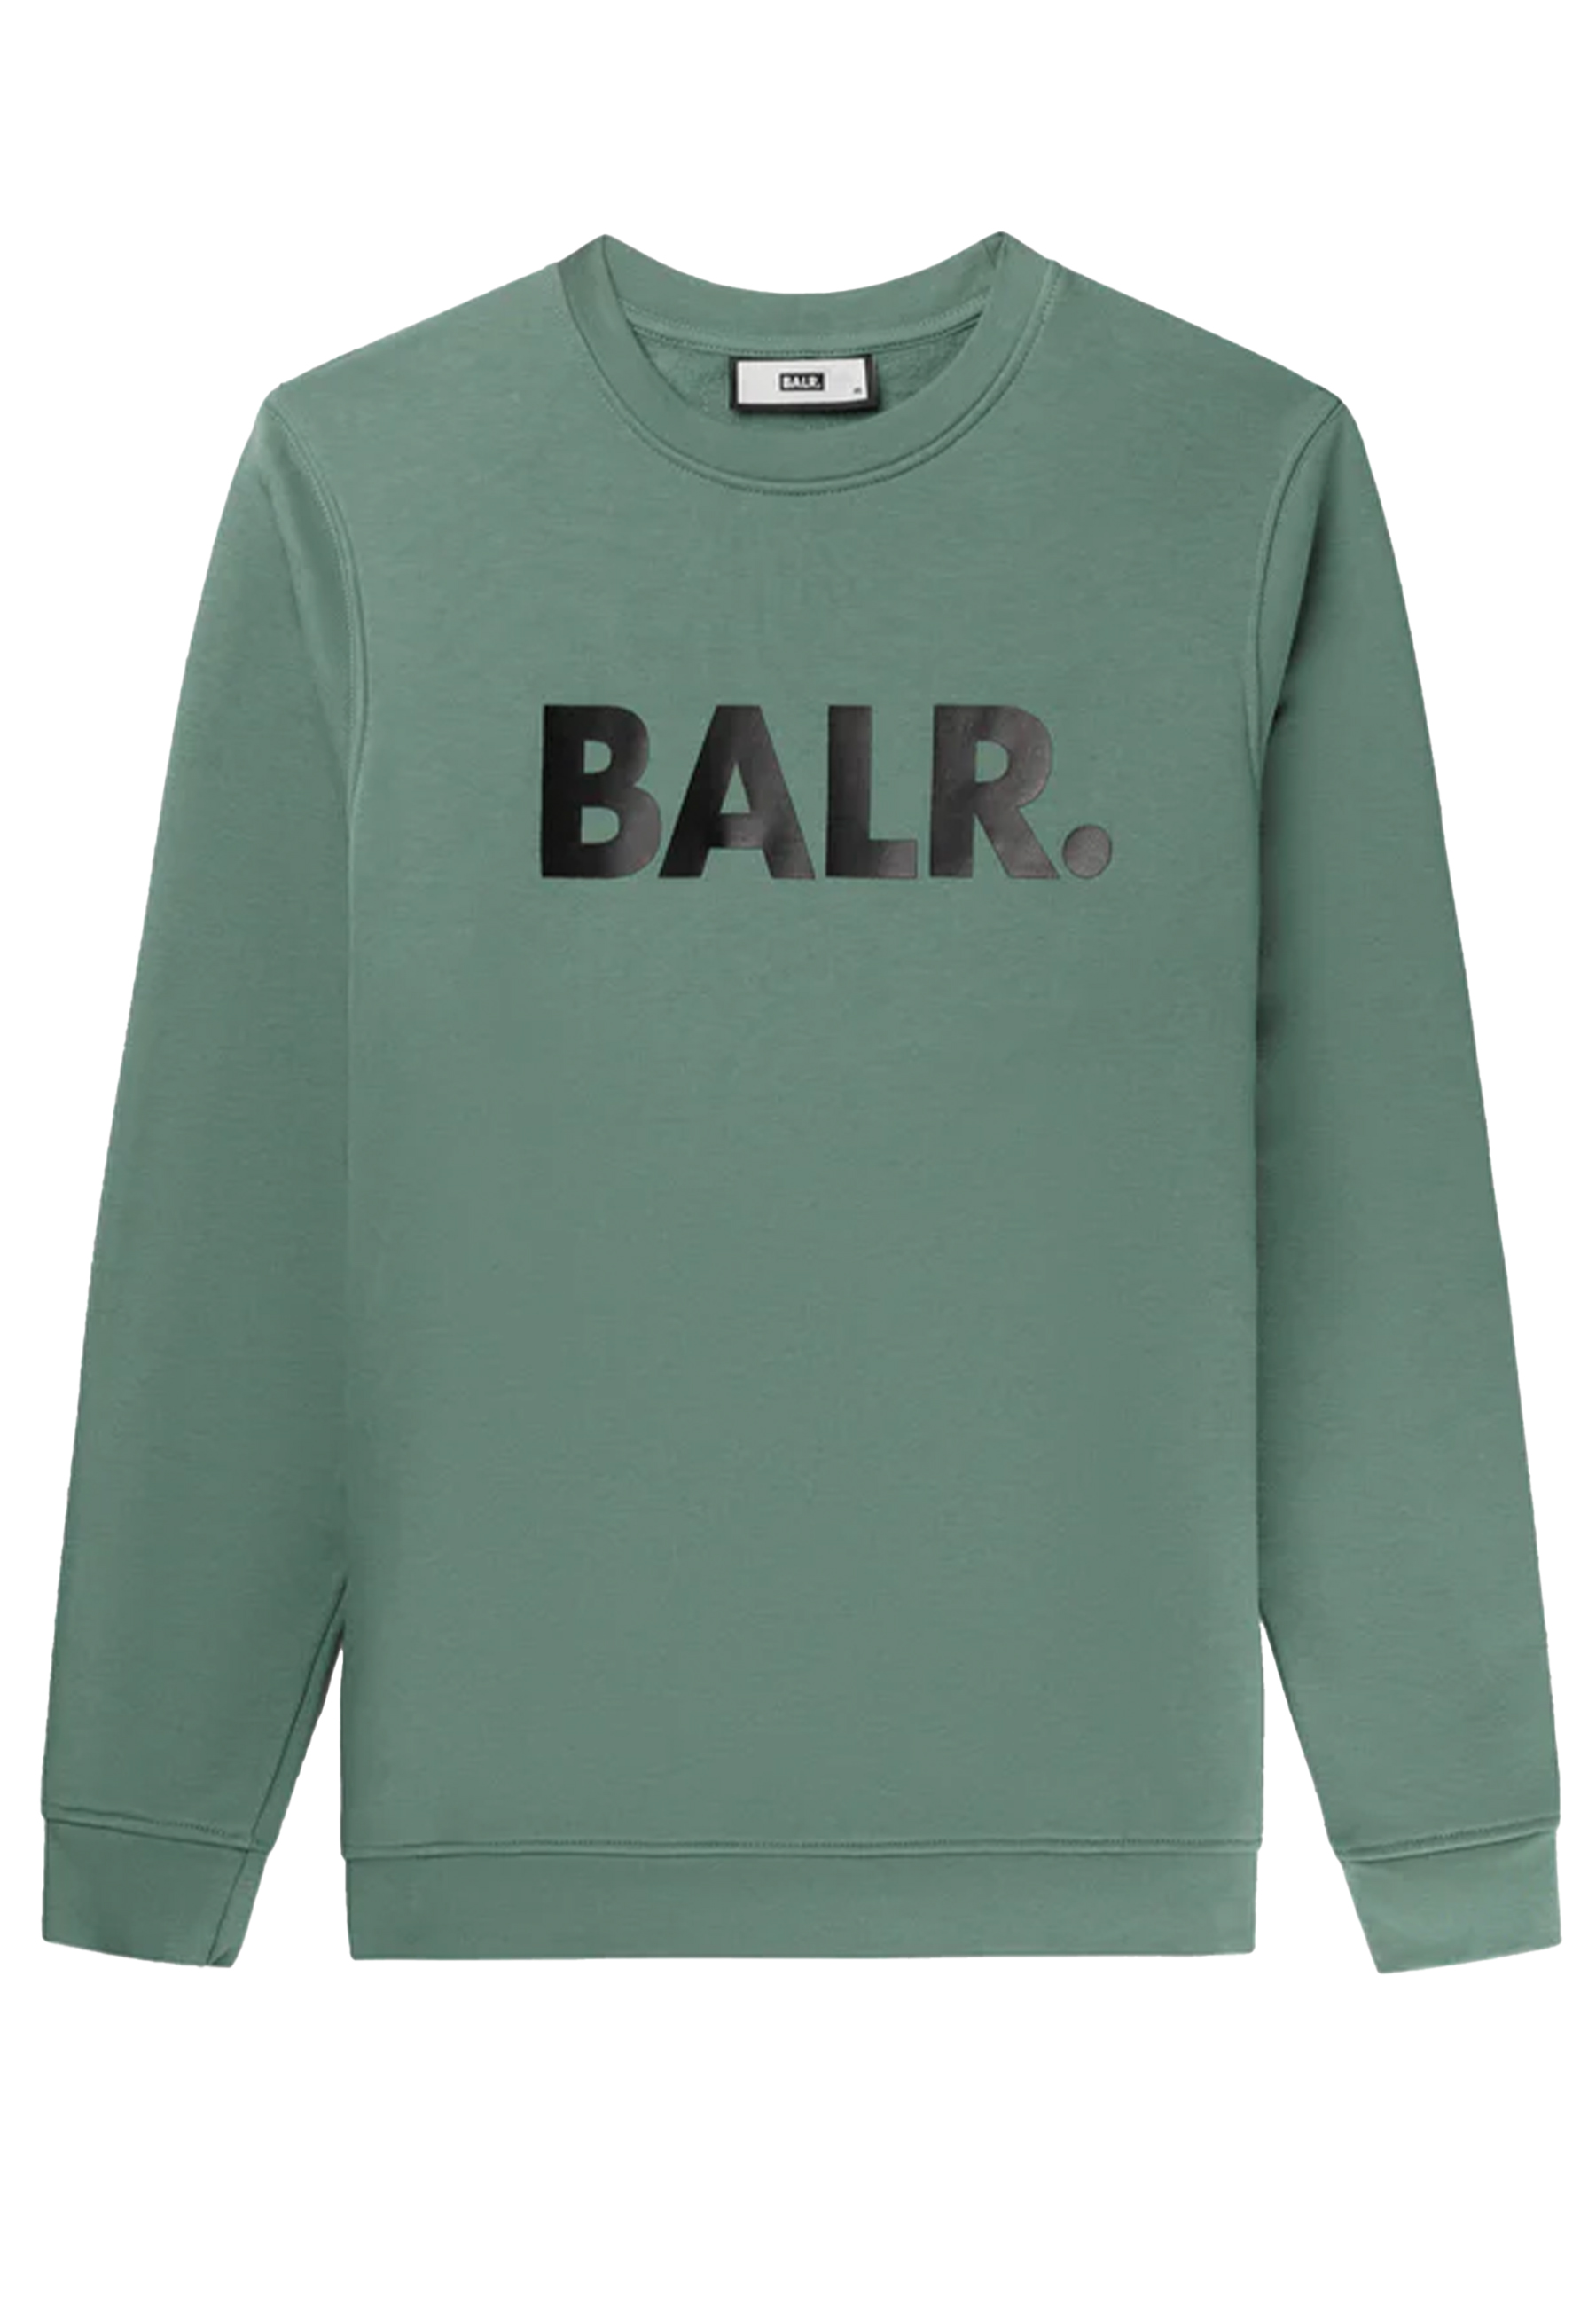 BALR. sweaters groen Heren maat M